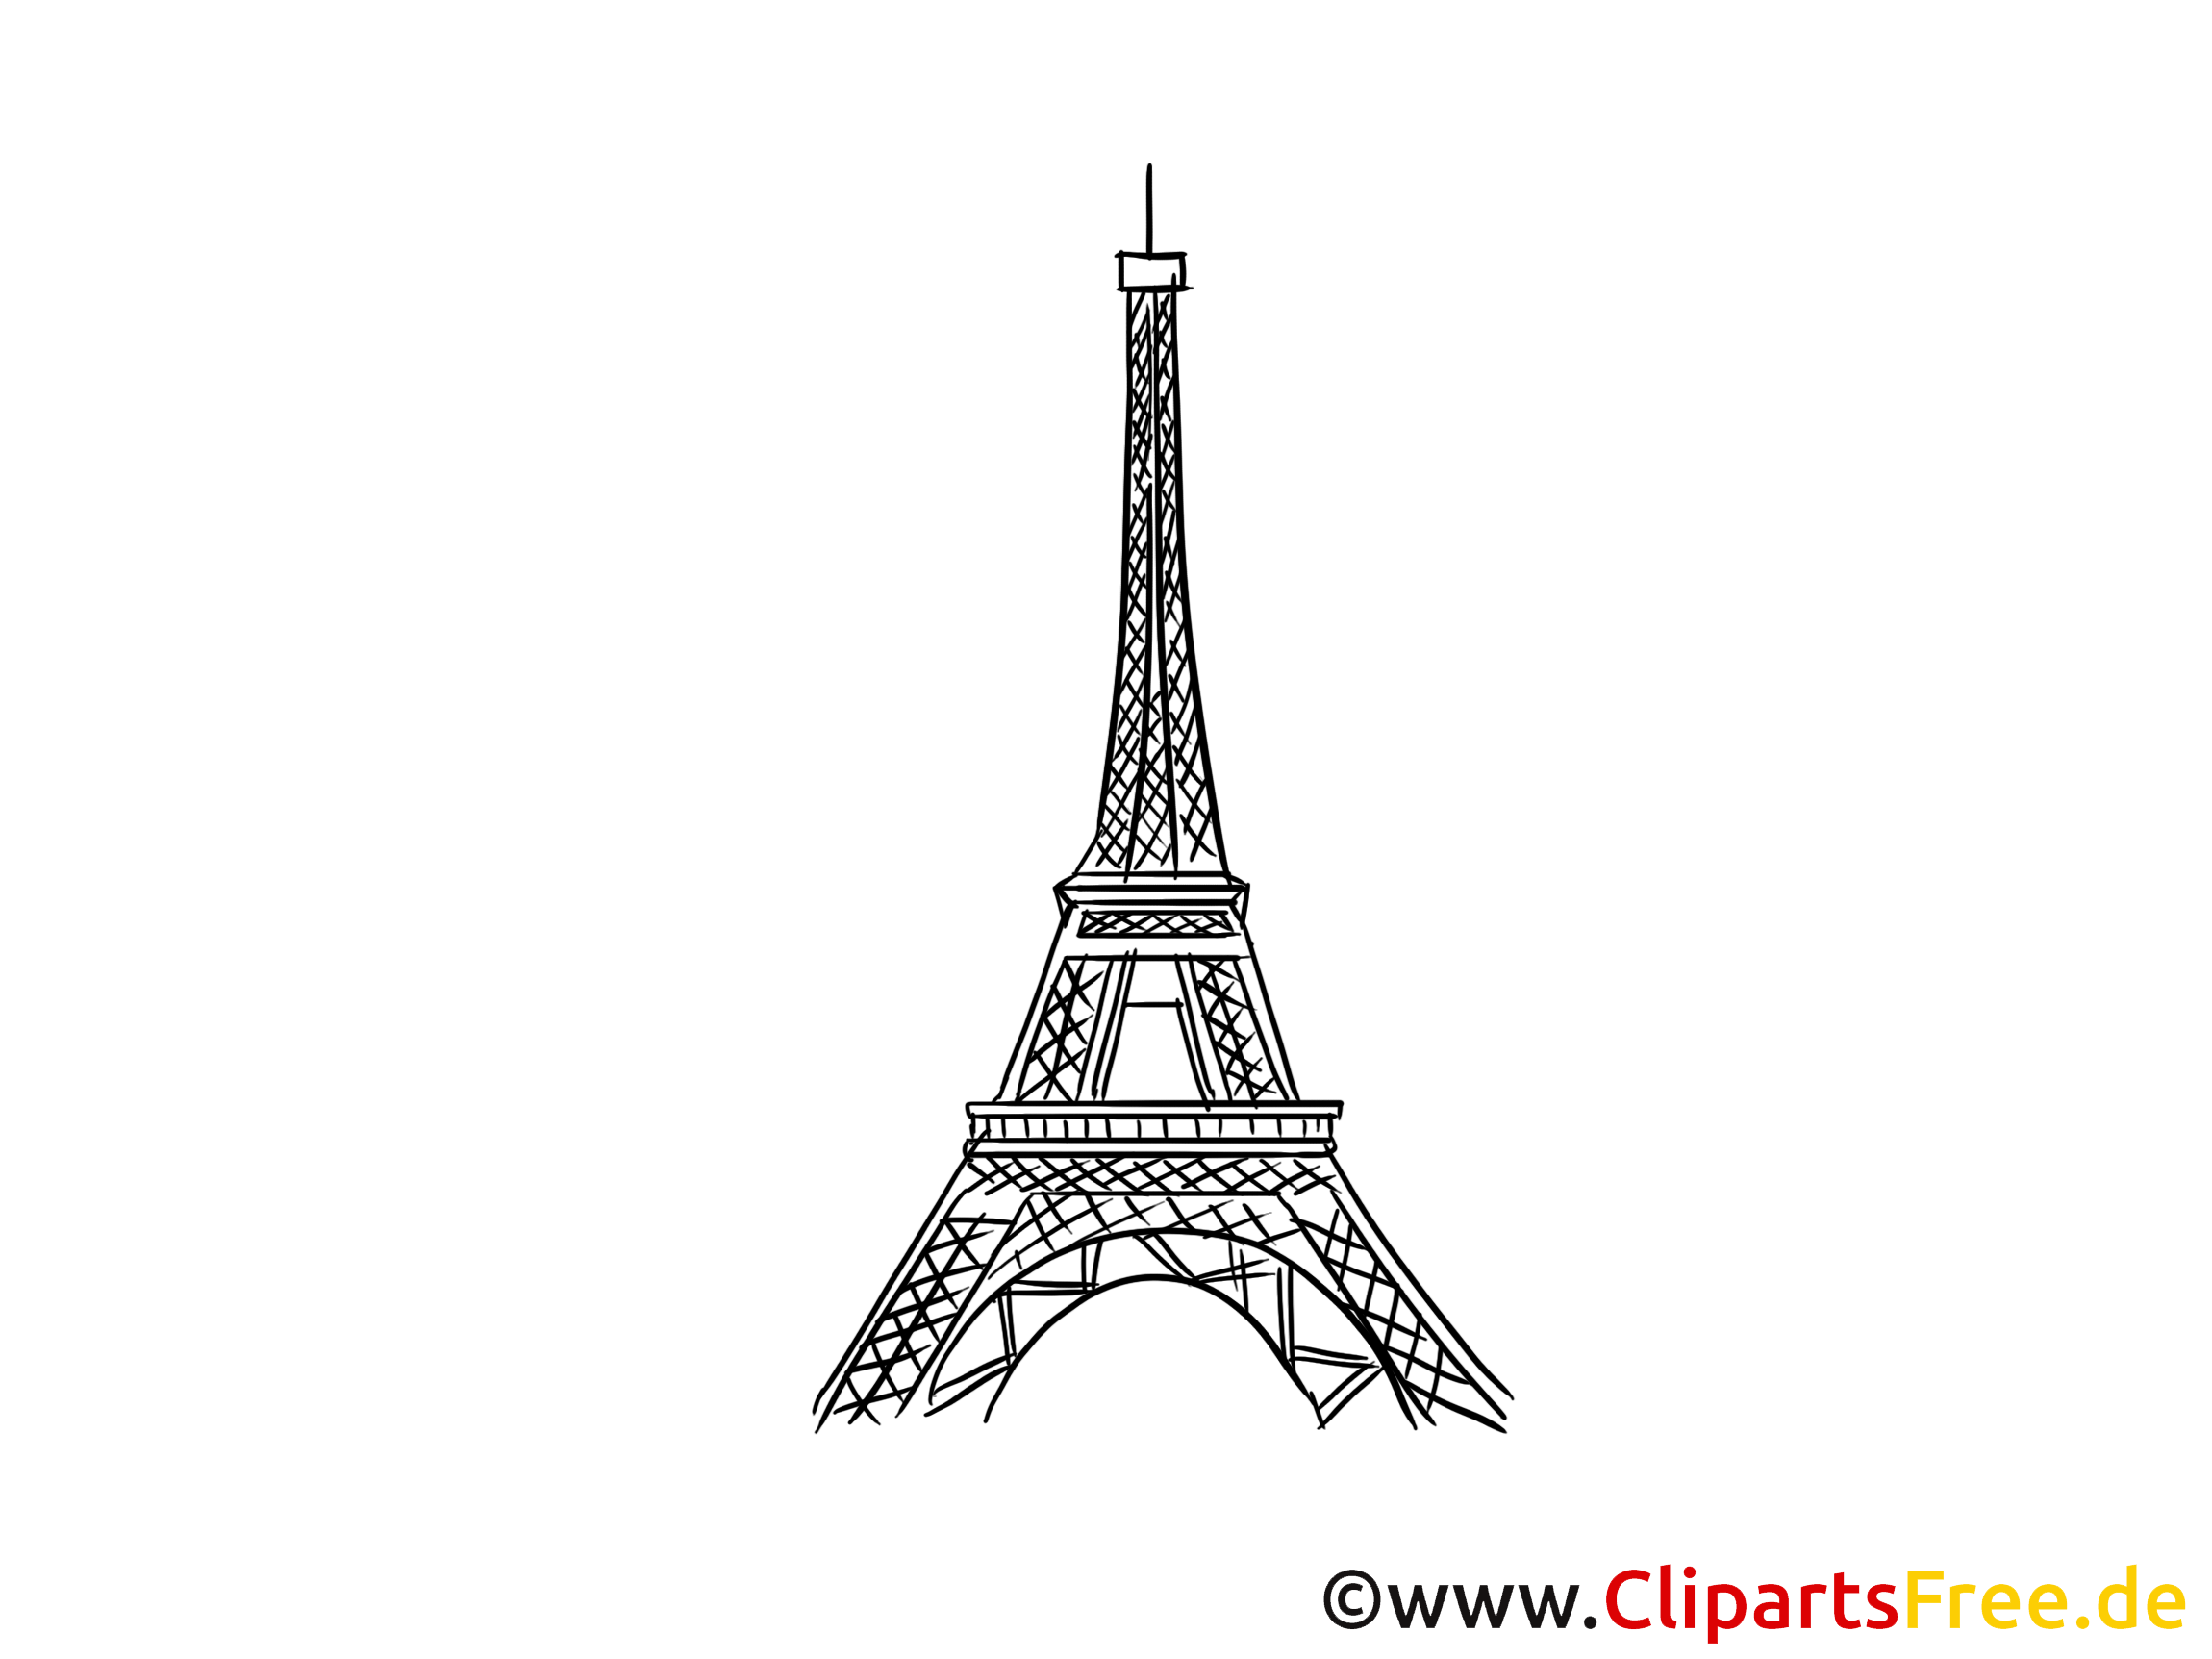 パリのエッフェル塔image 描画 無料クリップアート